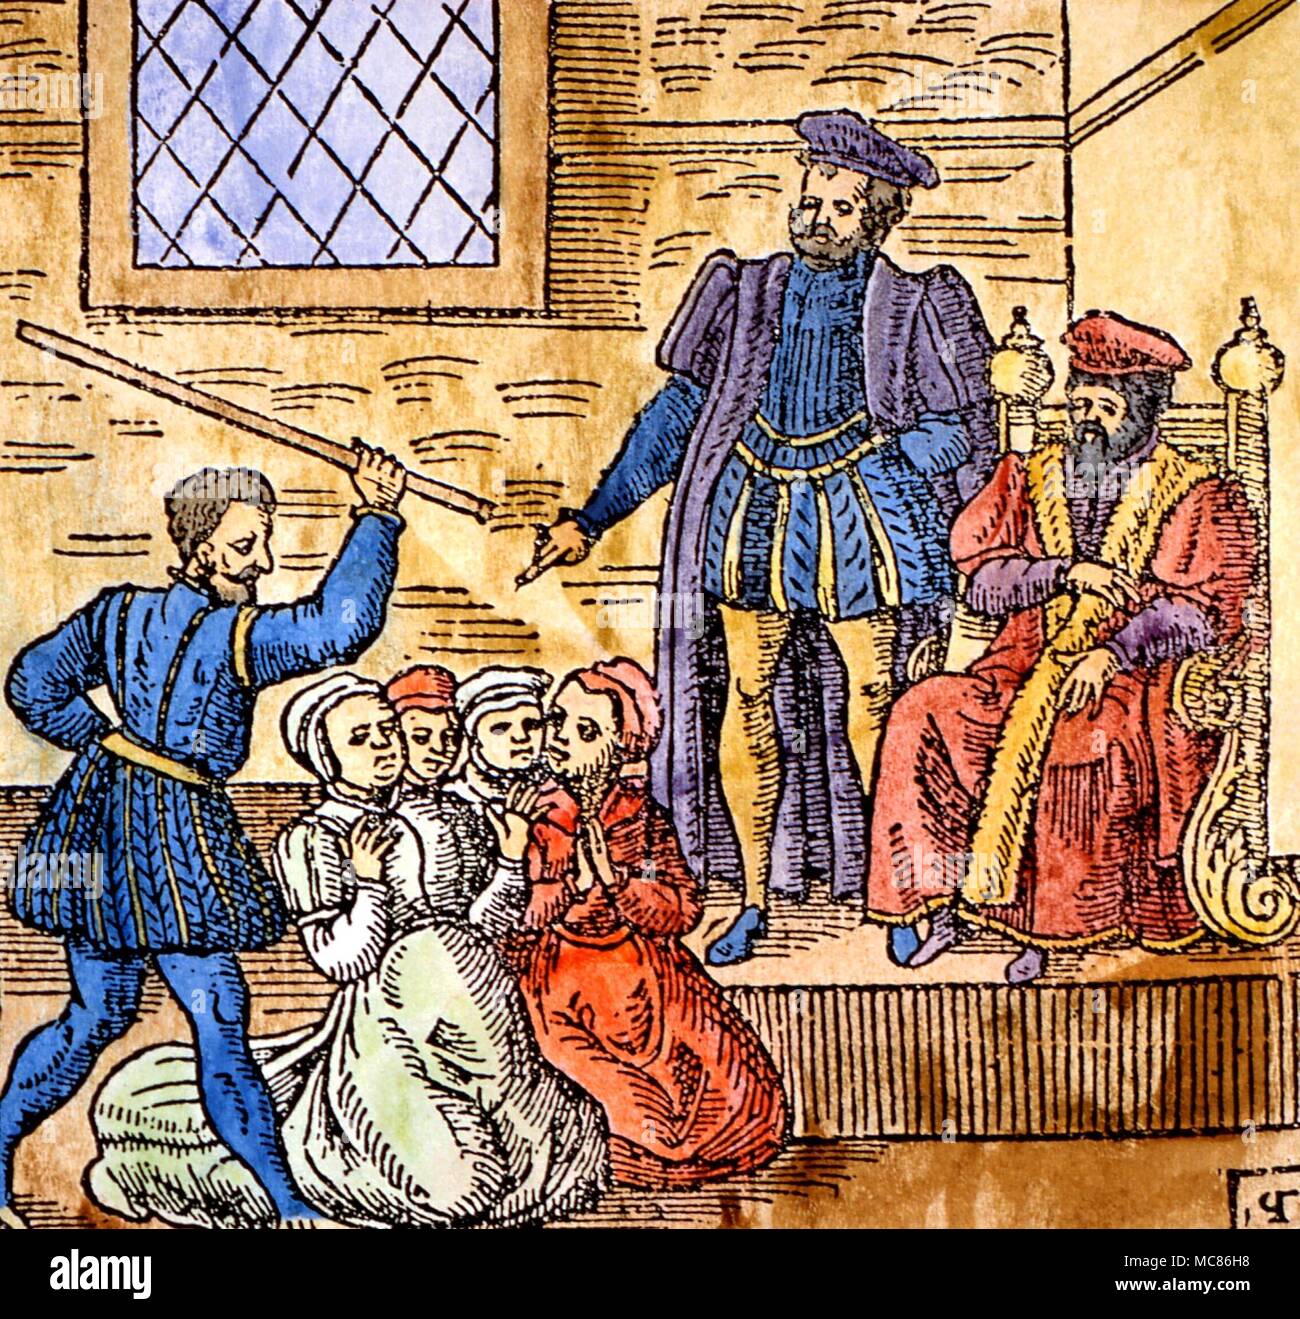 Folter Hexerei Holzschnitt mit dem schottischen König James VI., später James I von England, Überwachung der Folterung von Hexen in Edinburgh, circa 1590. Aus der Ausgabe 1591 der "Newes aus Schottland" Stockfoto